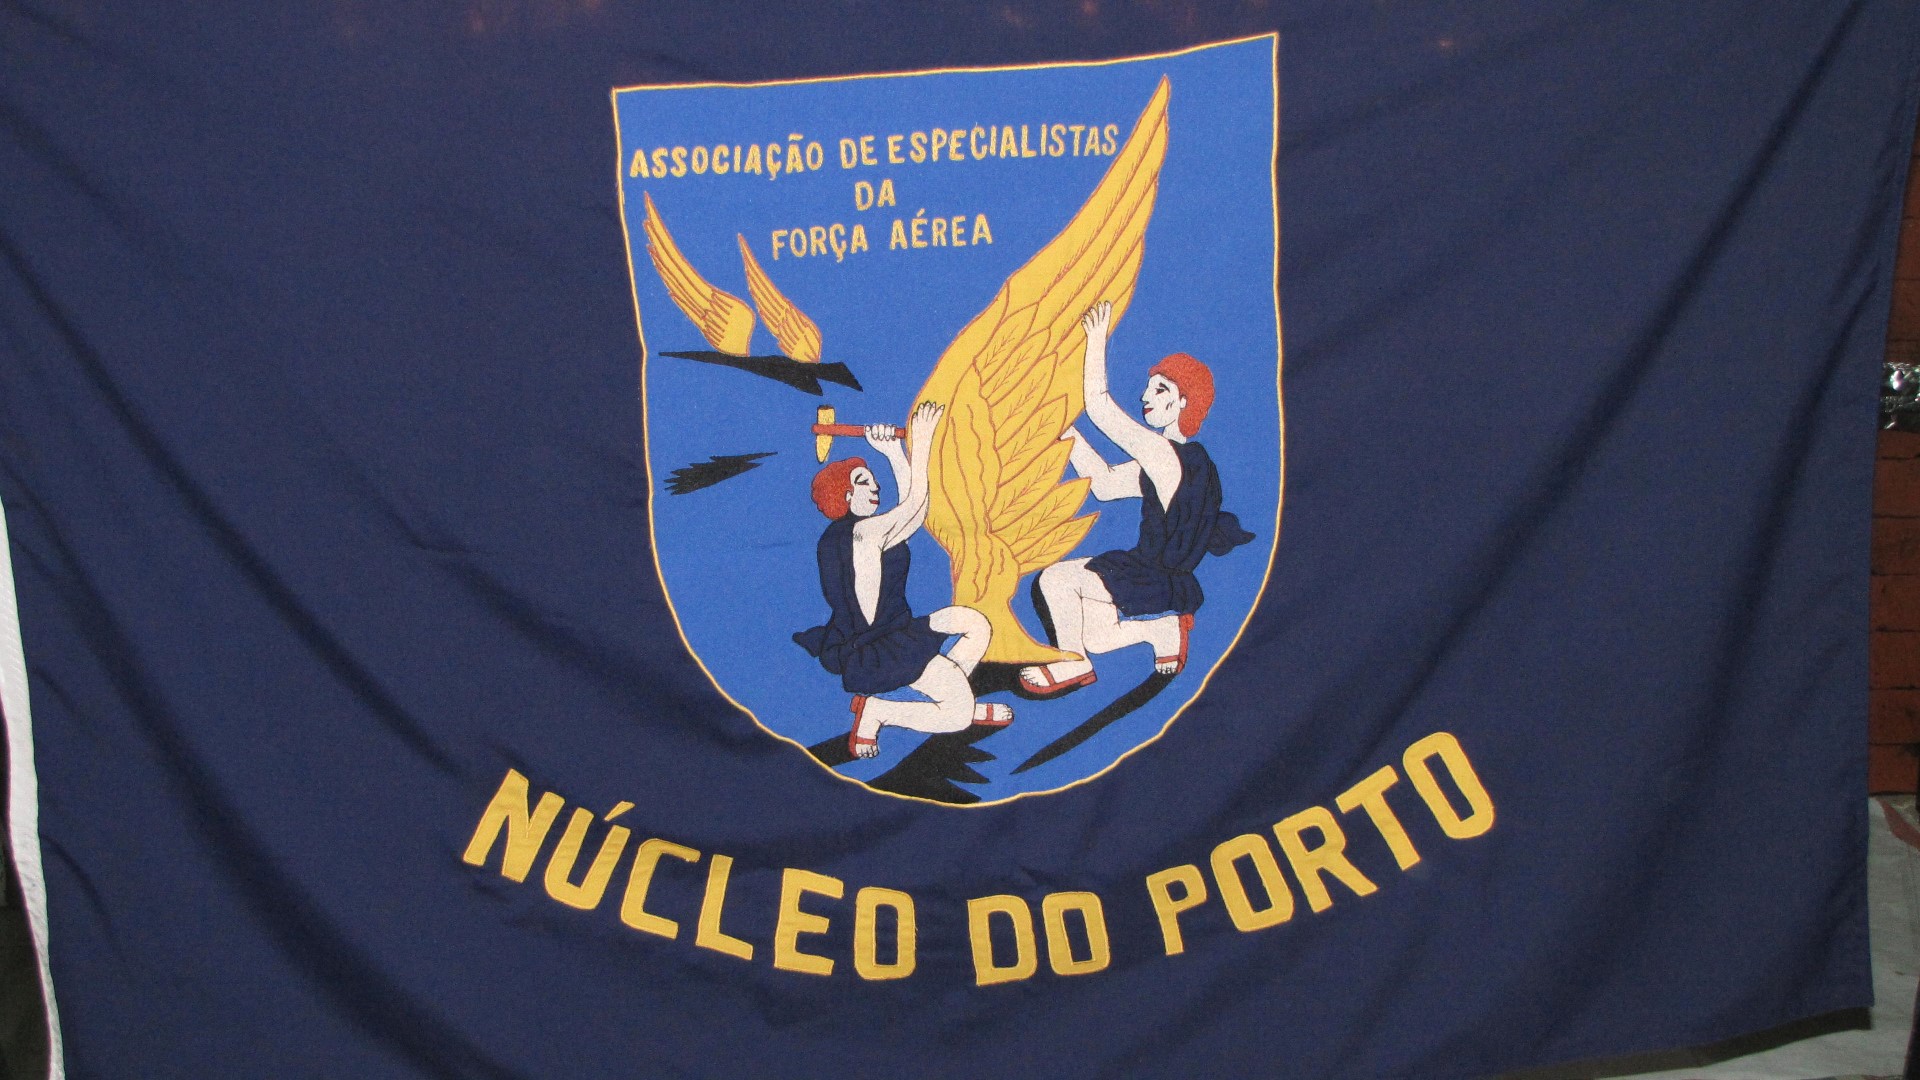 Ncleo do Porto elegeu os seus rgos dirigentes